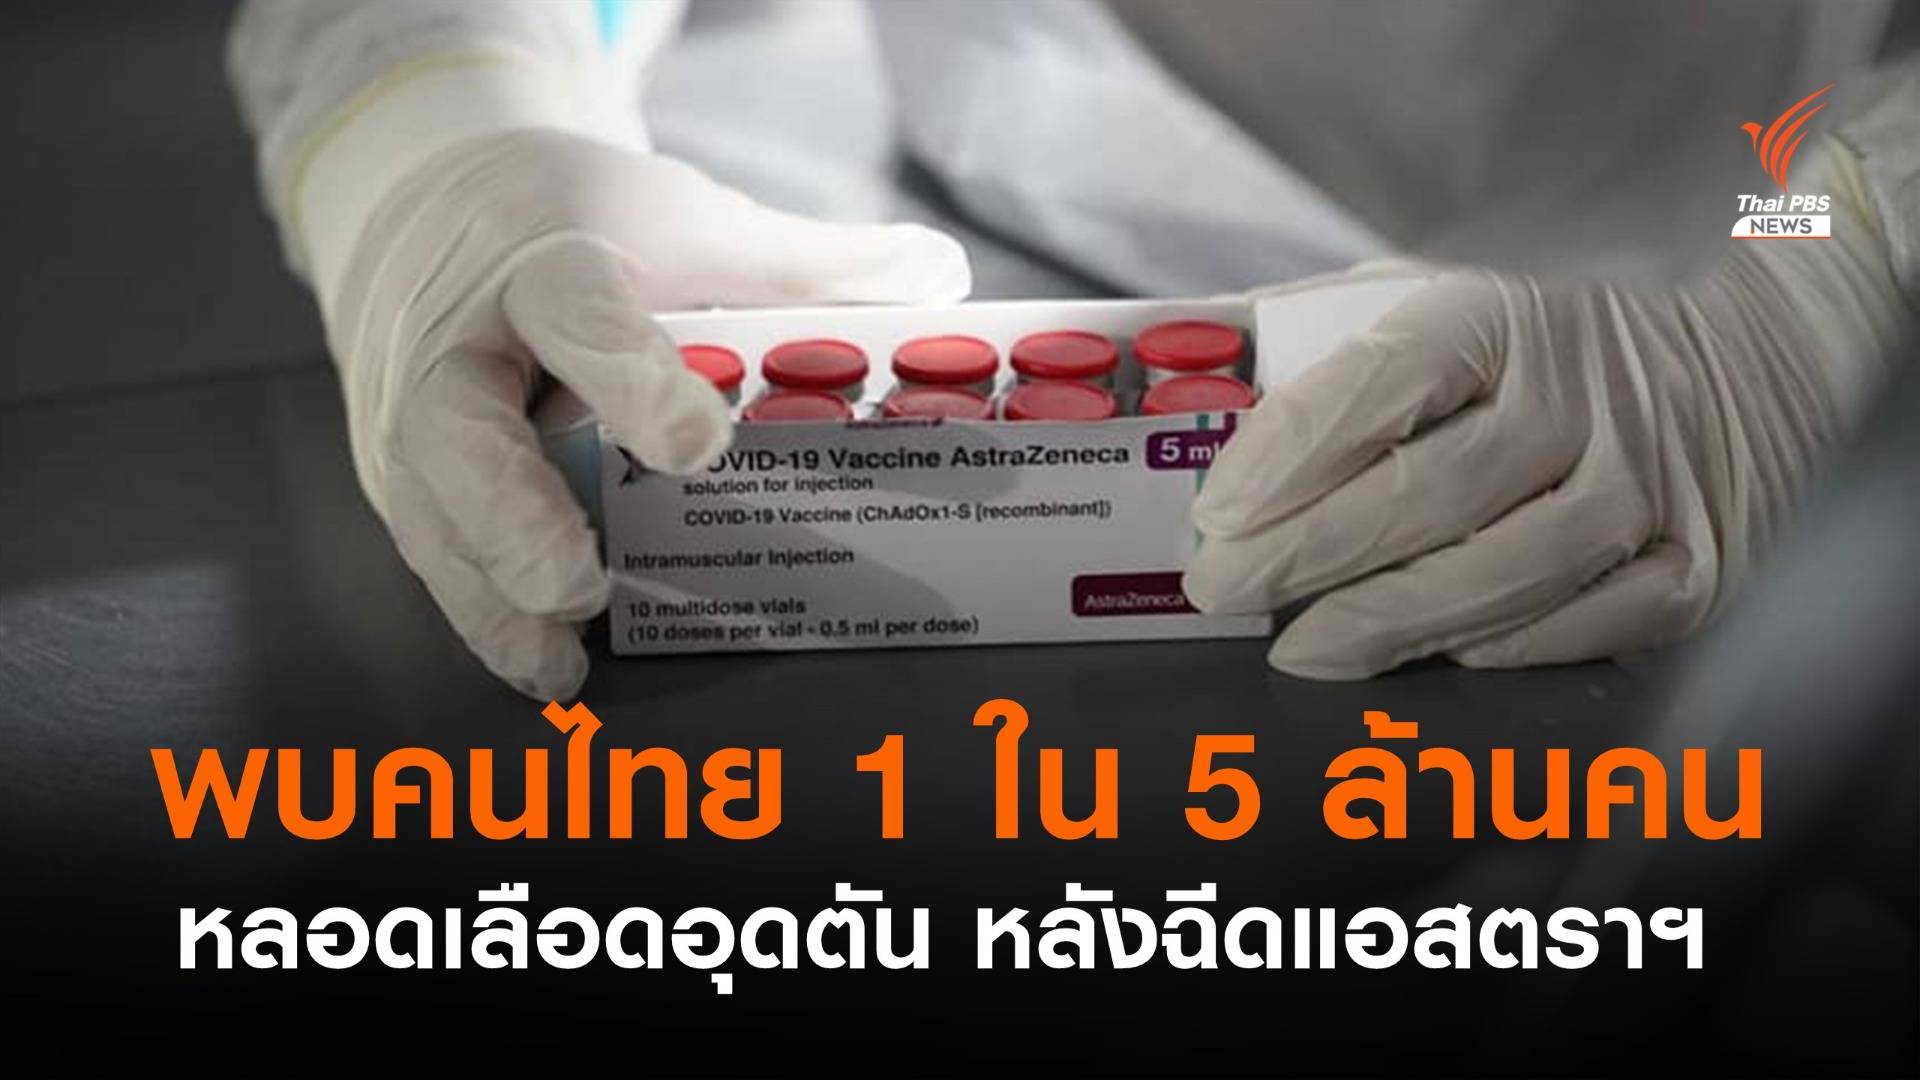 กรมวิทยาศาสตร์ฯ ระบุพบคนไทย 1 ใน 5 ล้านคน มีภาวะหลอดเลือดอุดตัน